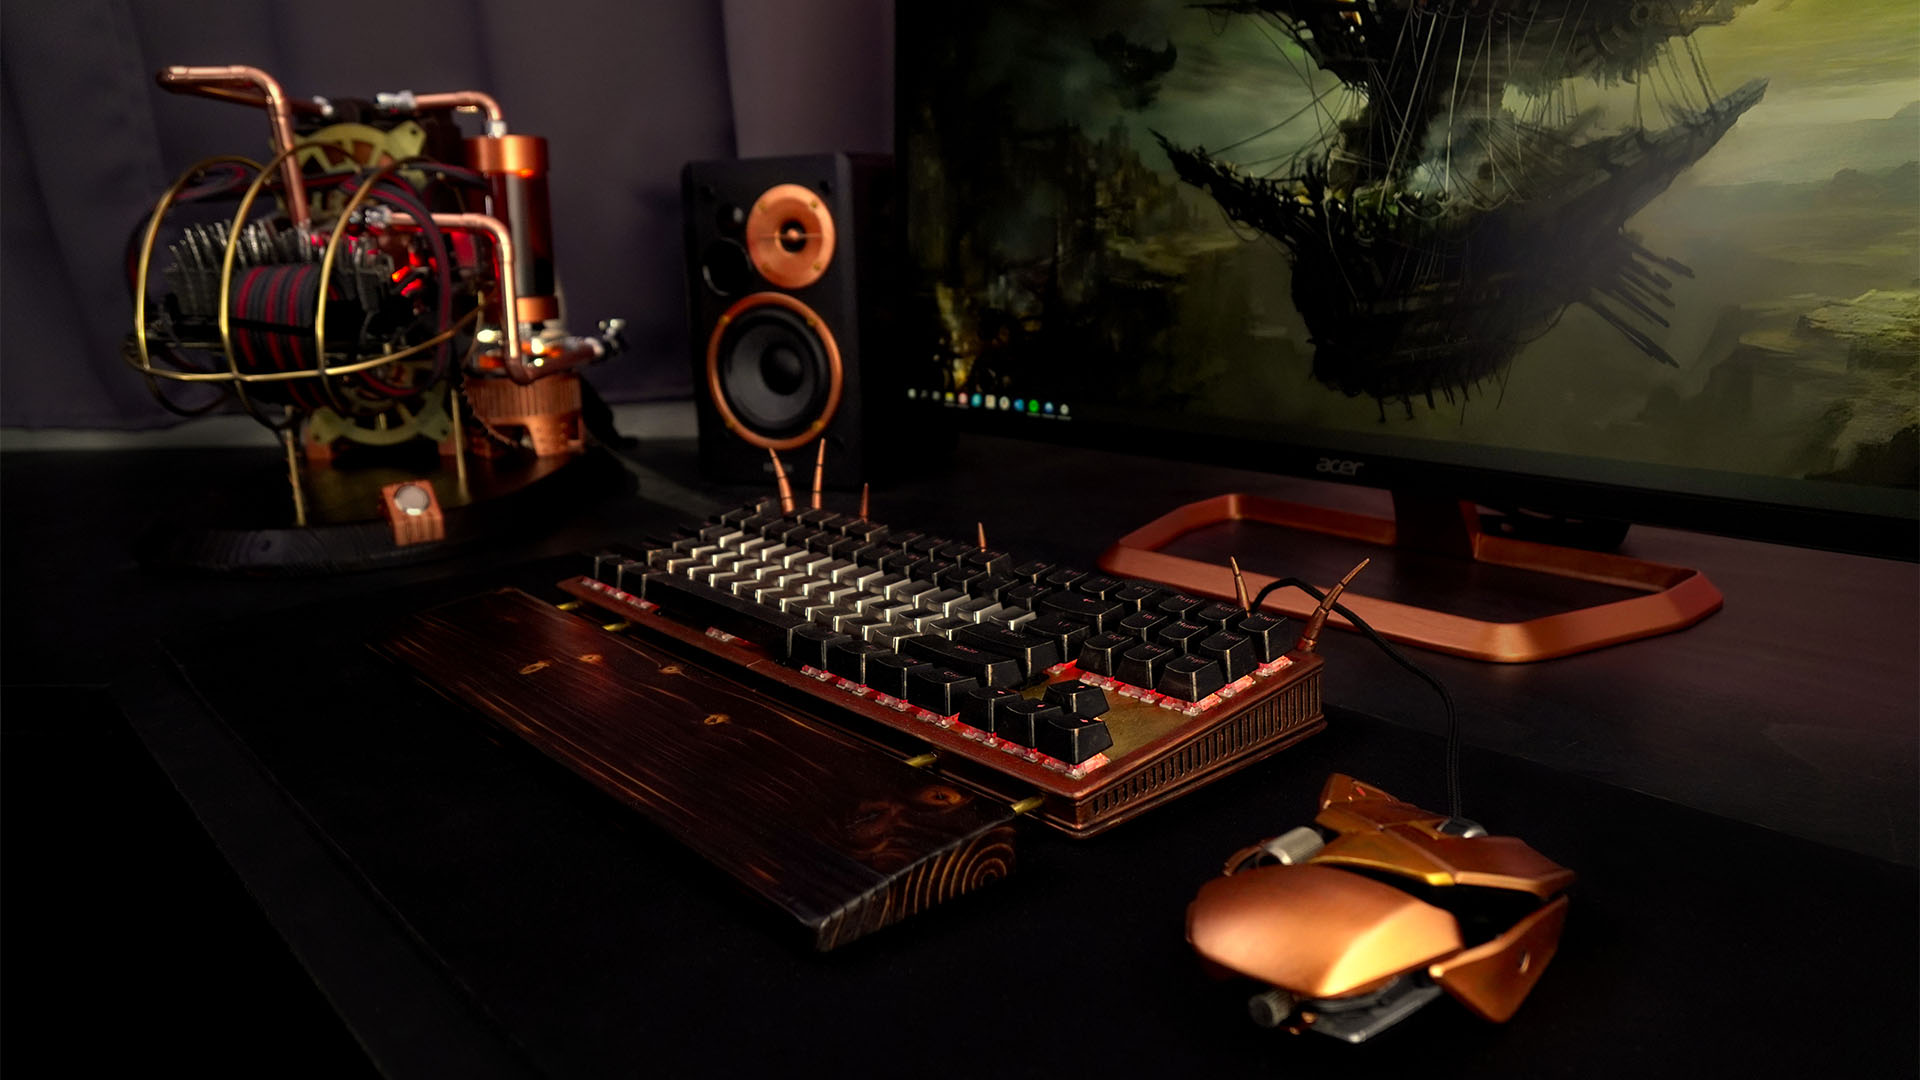 La PC steampunk construida junto con un monitor y un teclado personalizado